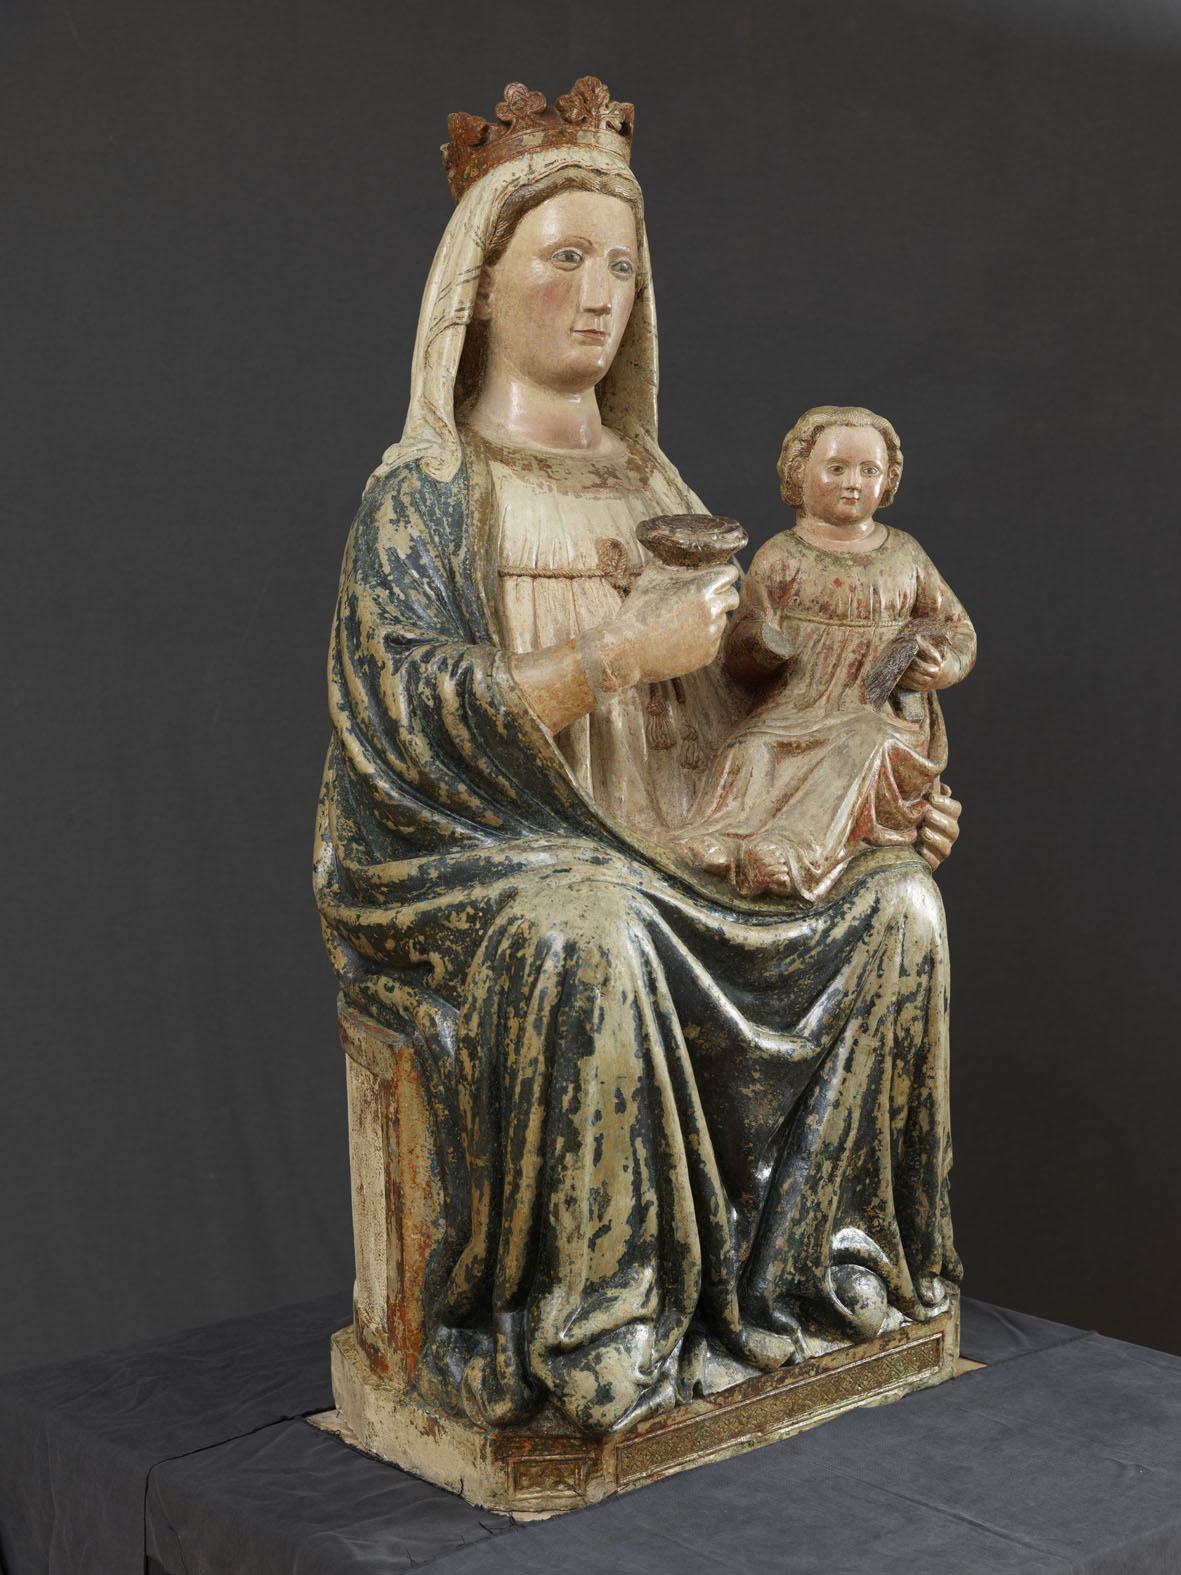 A Trento è in mostra la Madonna in Blu, una scultura veronese del Trecento